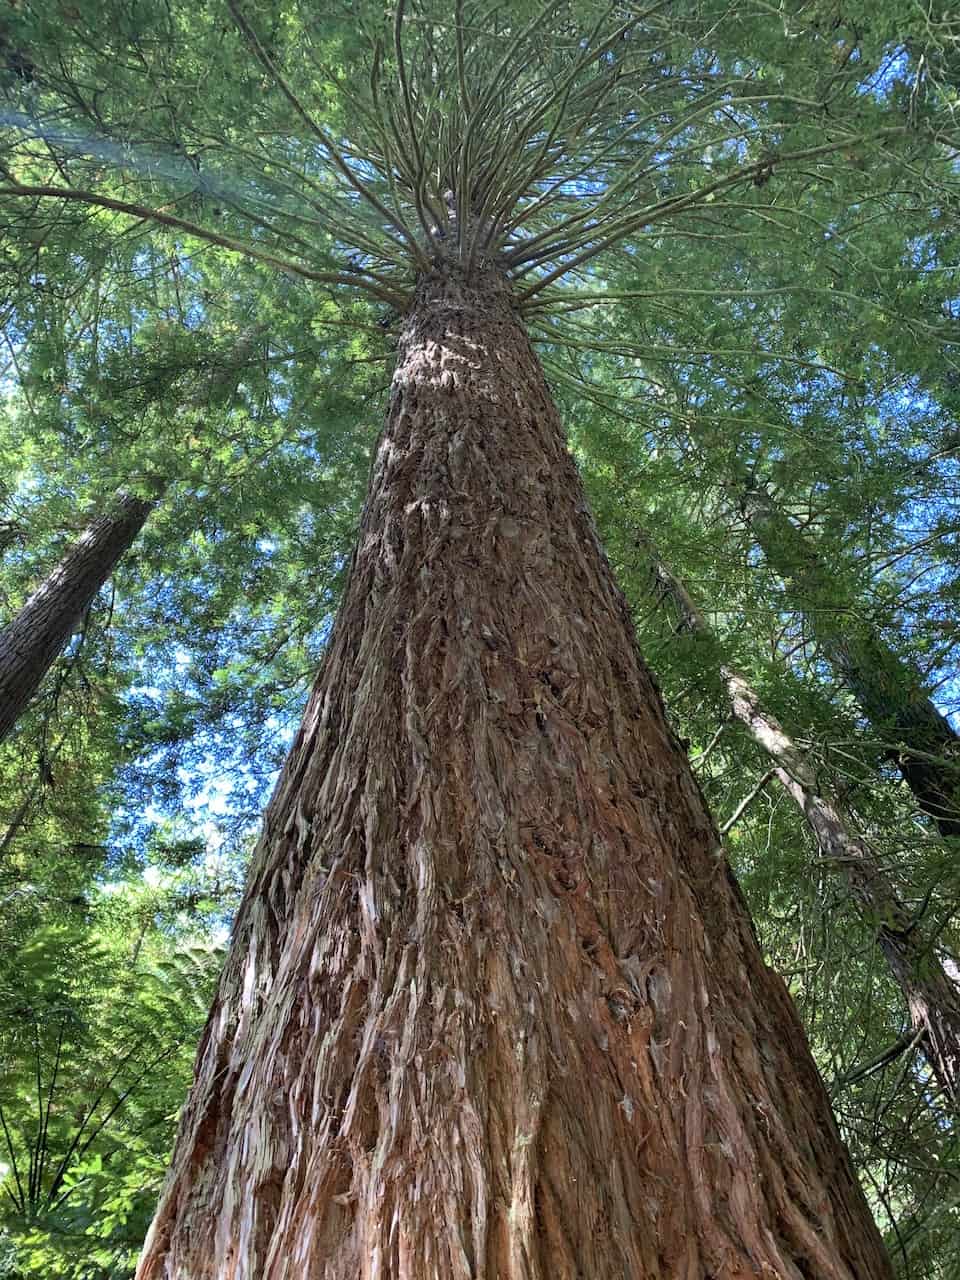 Whakarewarewa Redwoods